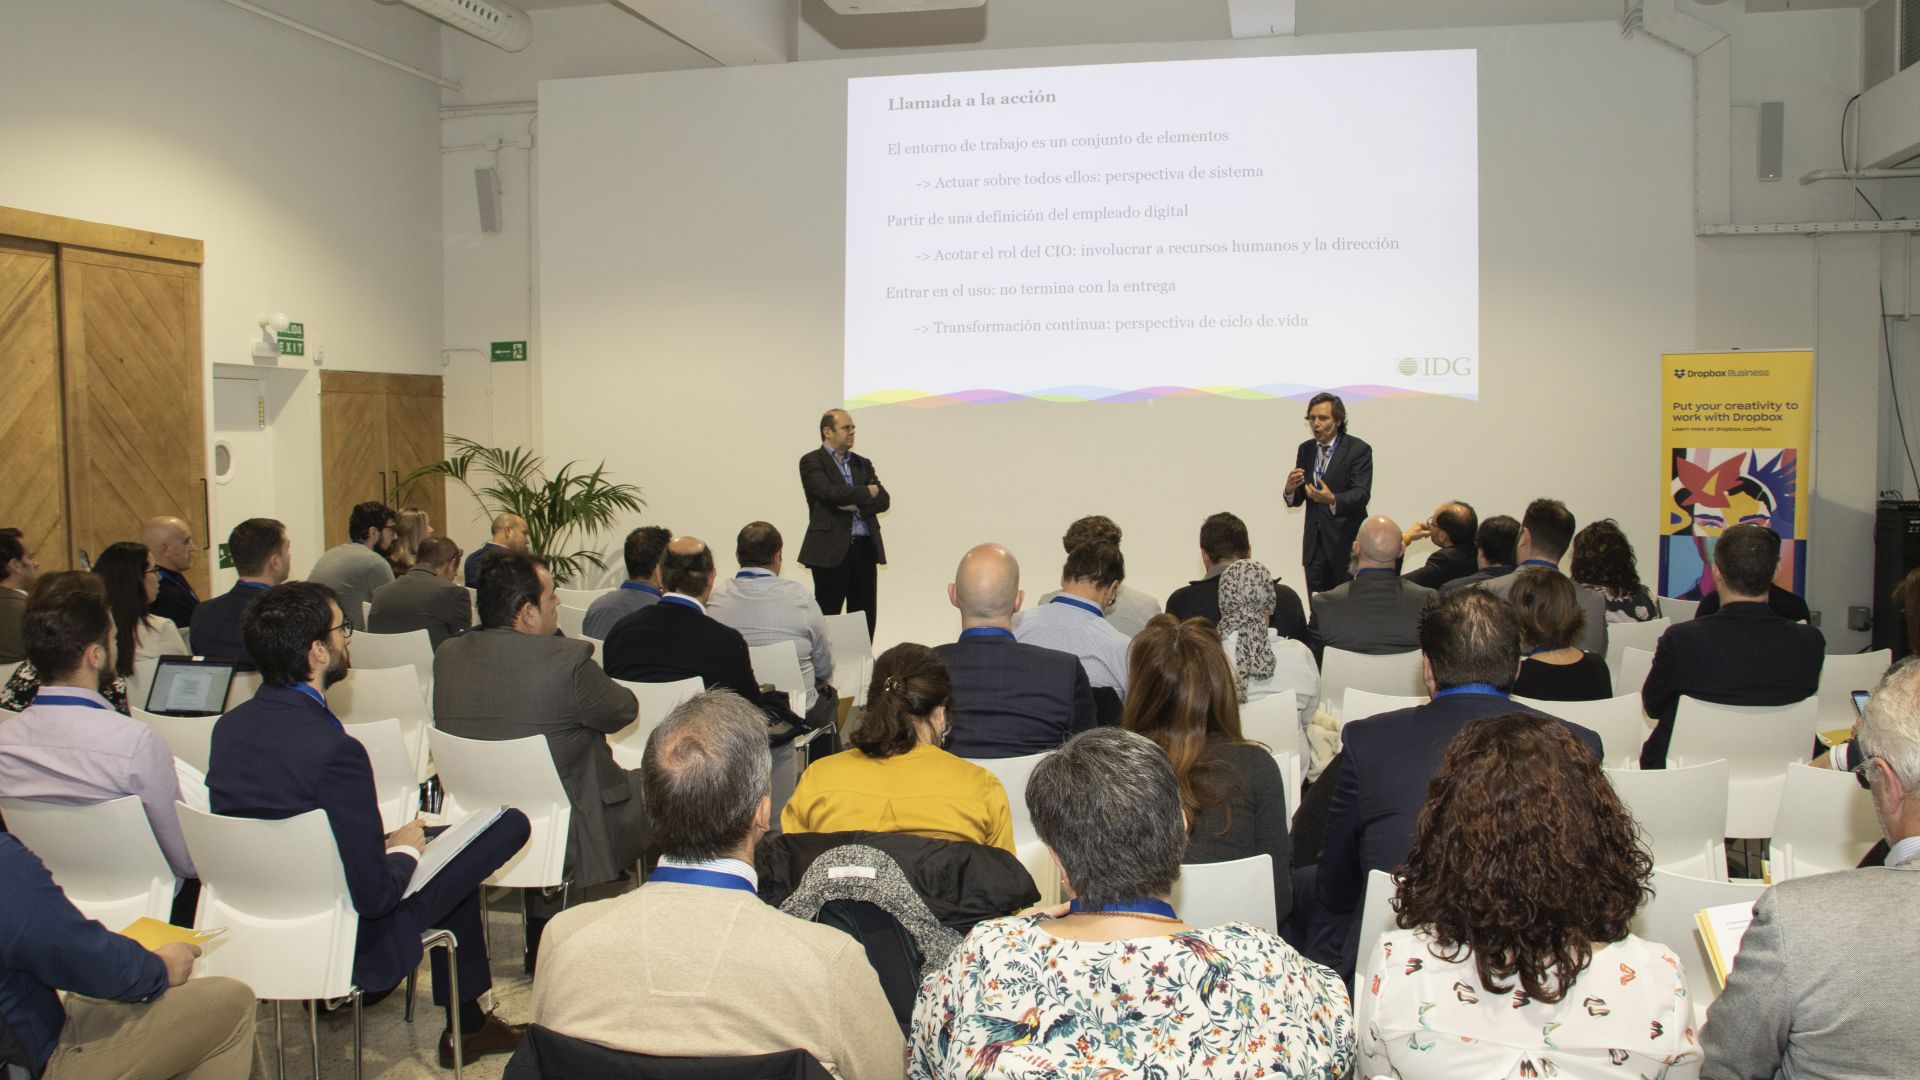 Alberto Bellé y Fernando Maldonado, analistas de IDG Research, en el evento Workplace Transformation